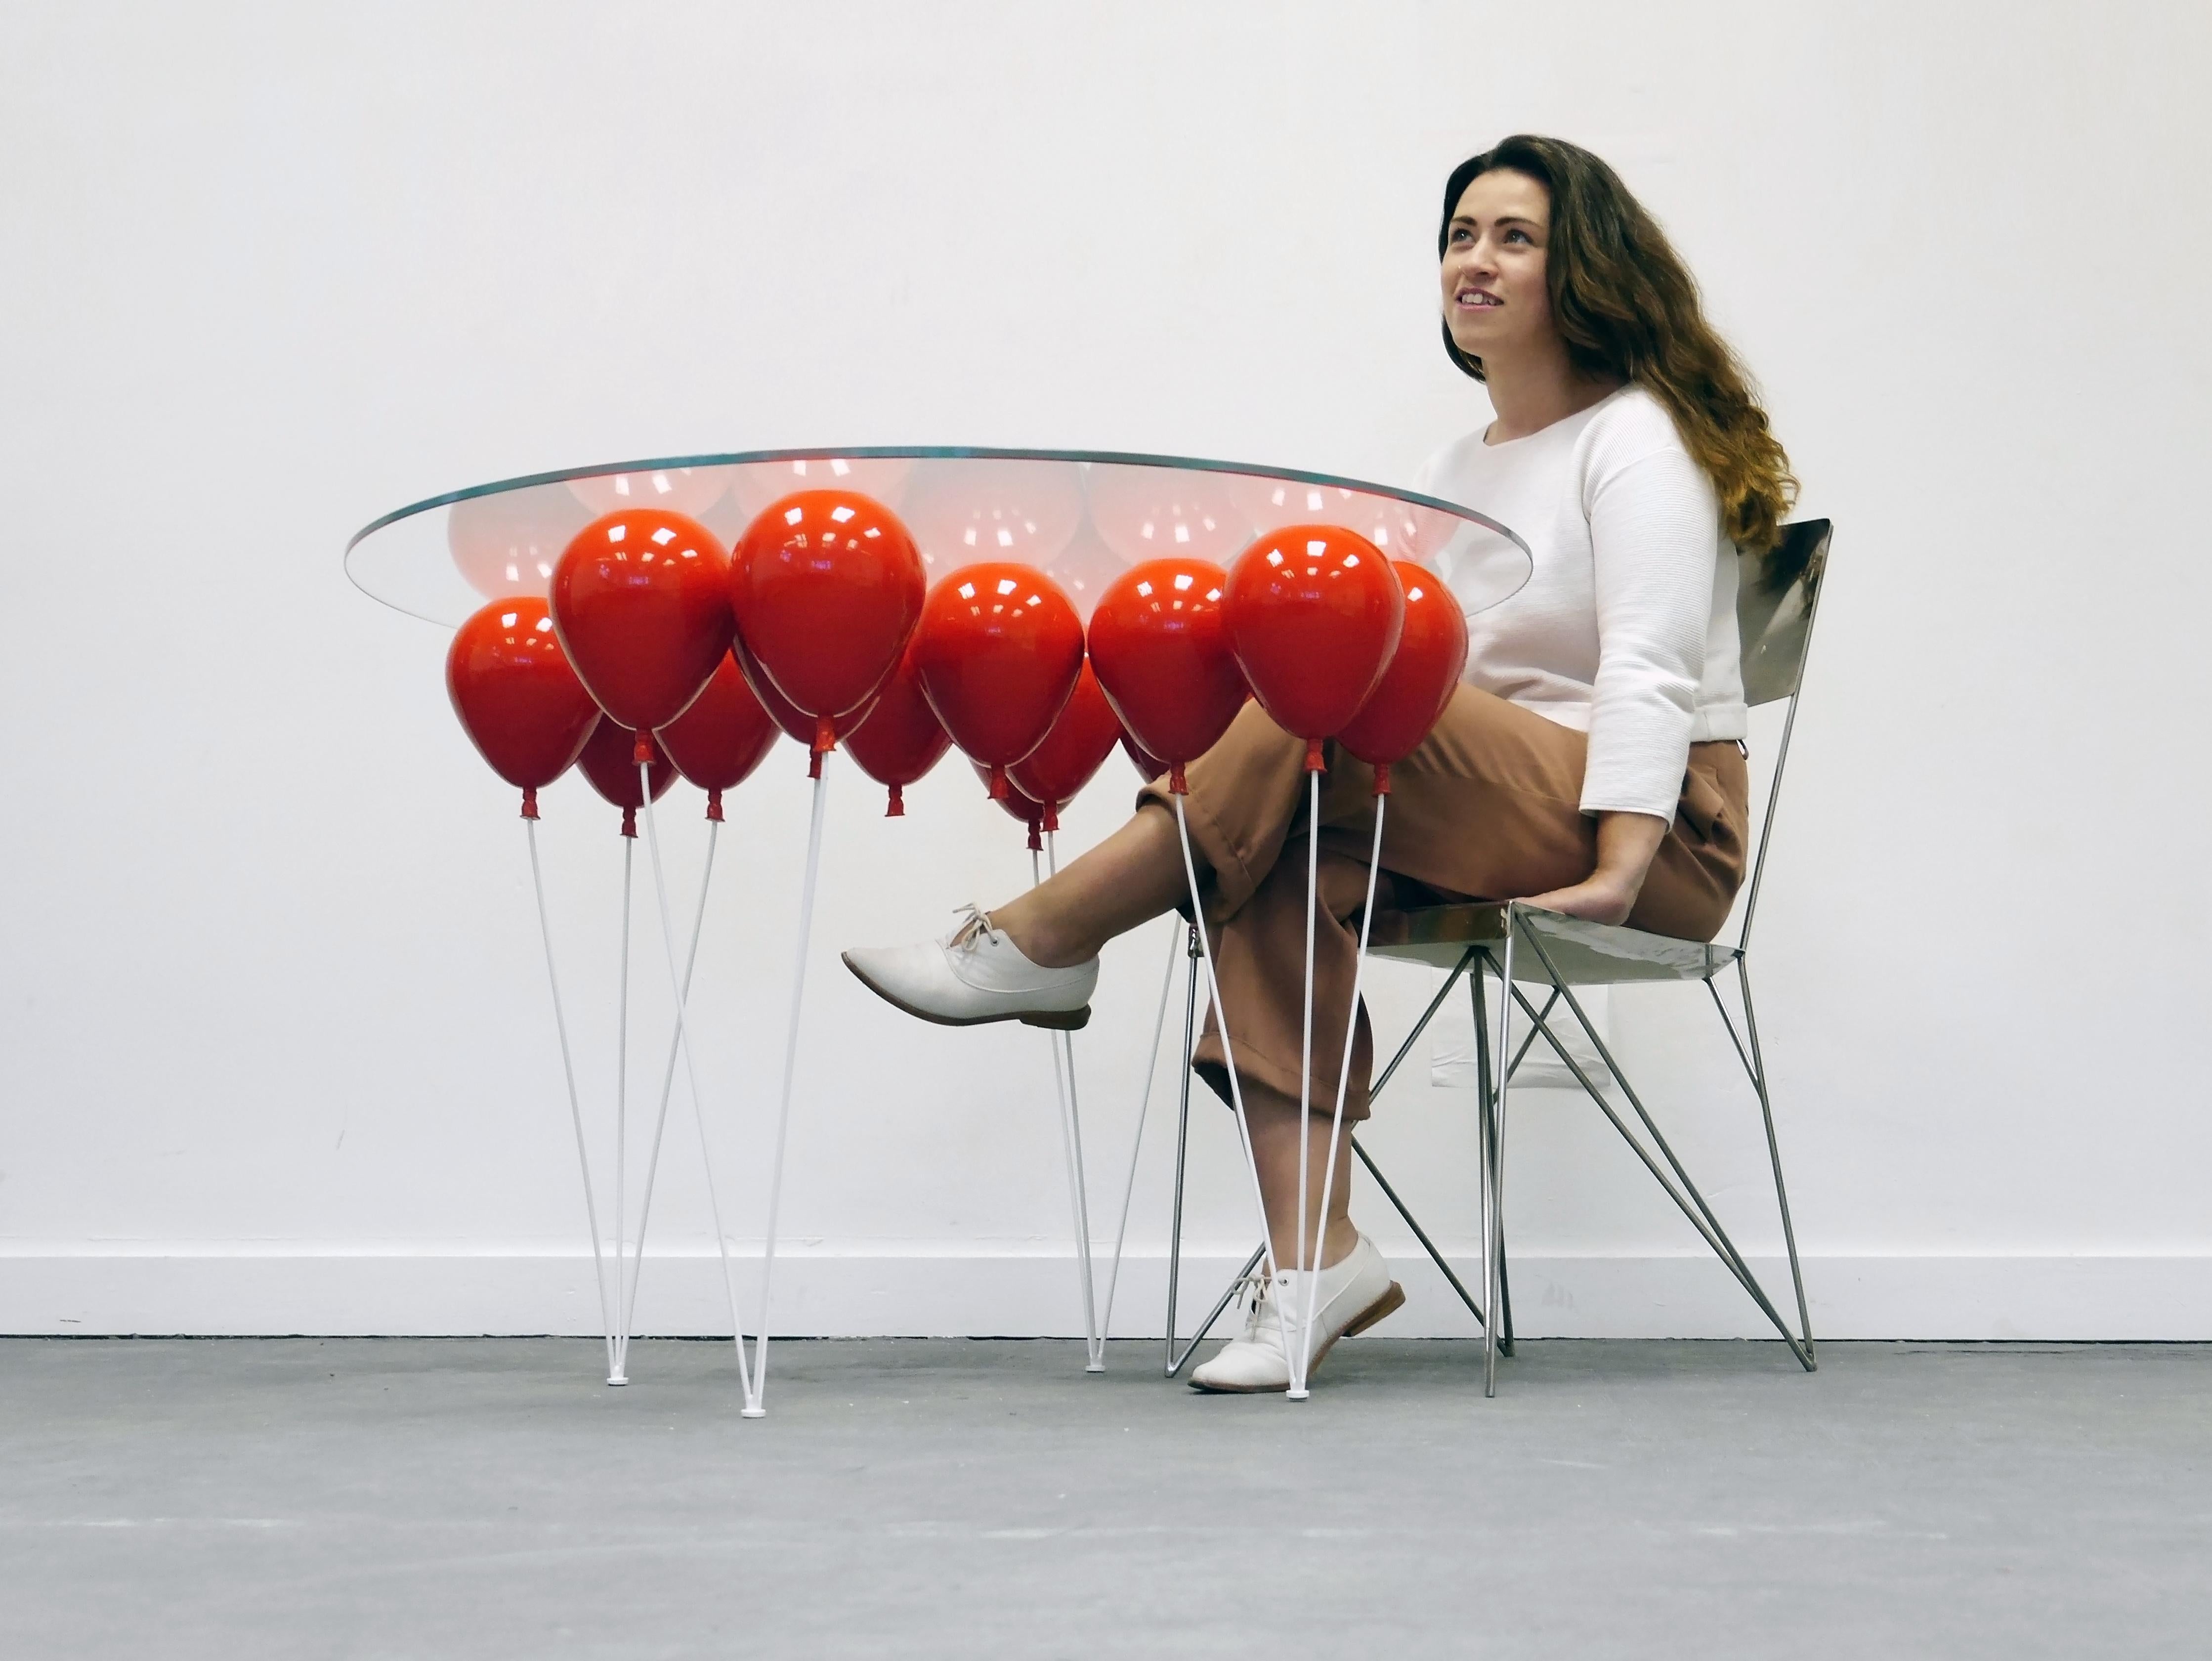 Der UP Balloon Esstisch ist ein verspieltes Trompe L'Oeil mit einer Reihe von Ballons, die die Illusion einer schwebenden Glastischplatte erwecken. 

Ein aufmunterndes Design von Chris Duffy, das die Fantasie anregt, mit den Konzepten von Schweben